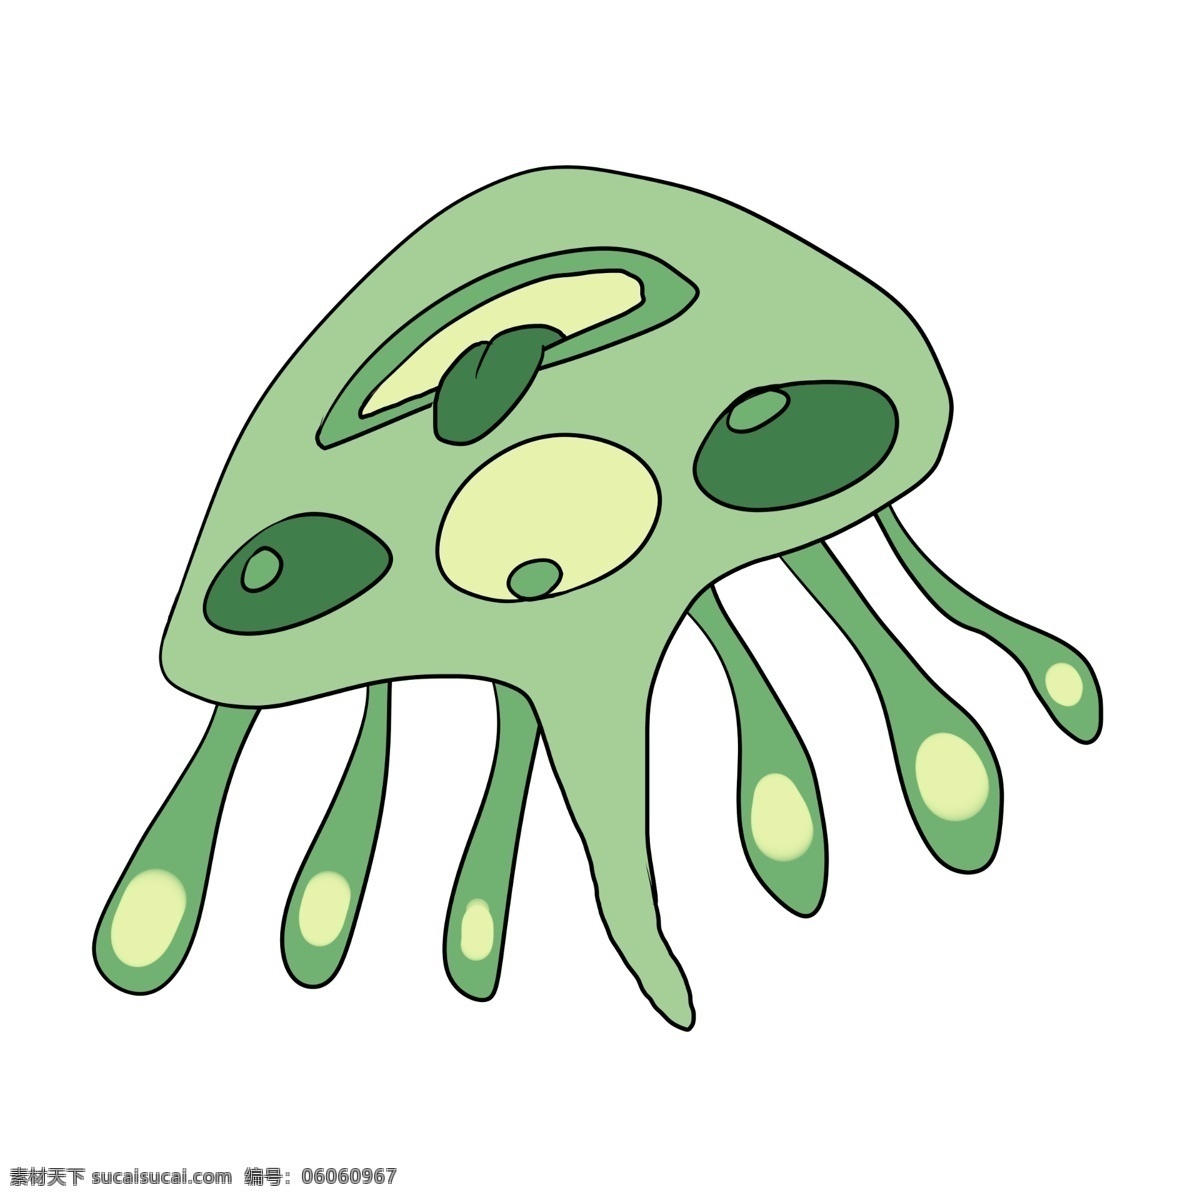 章鱼 形状 细菌 插画 章鱼形状细菌 绿色细菌 绿色的触须 卡通细菌插画 黄色的斑点 生物细菌插画